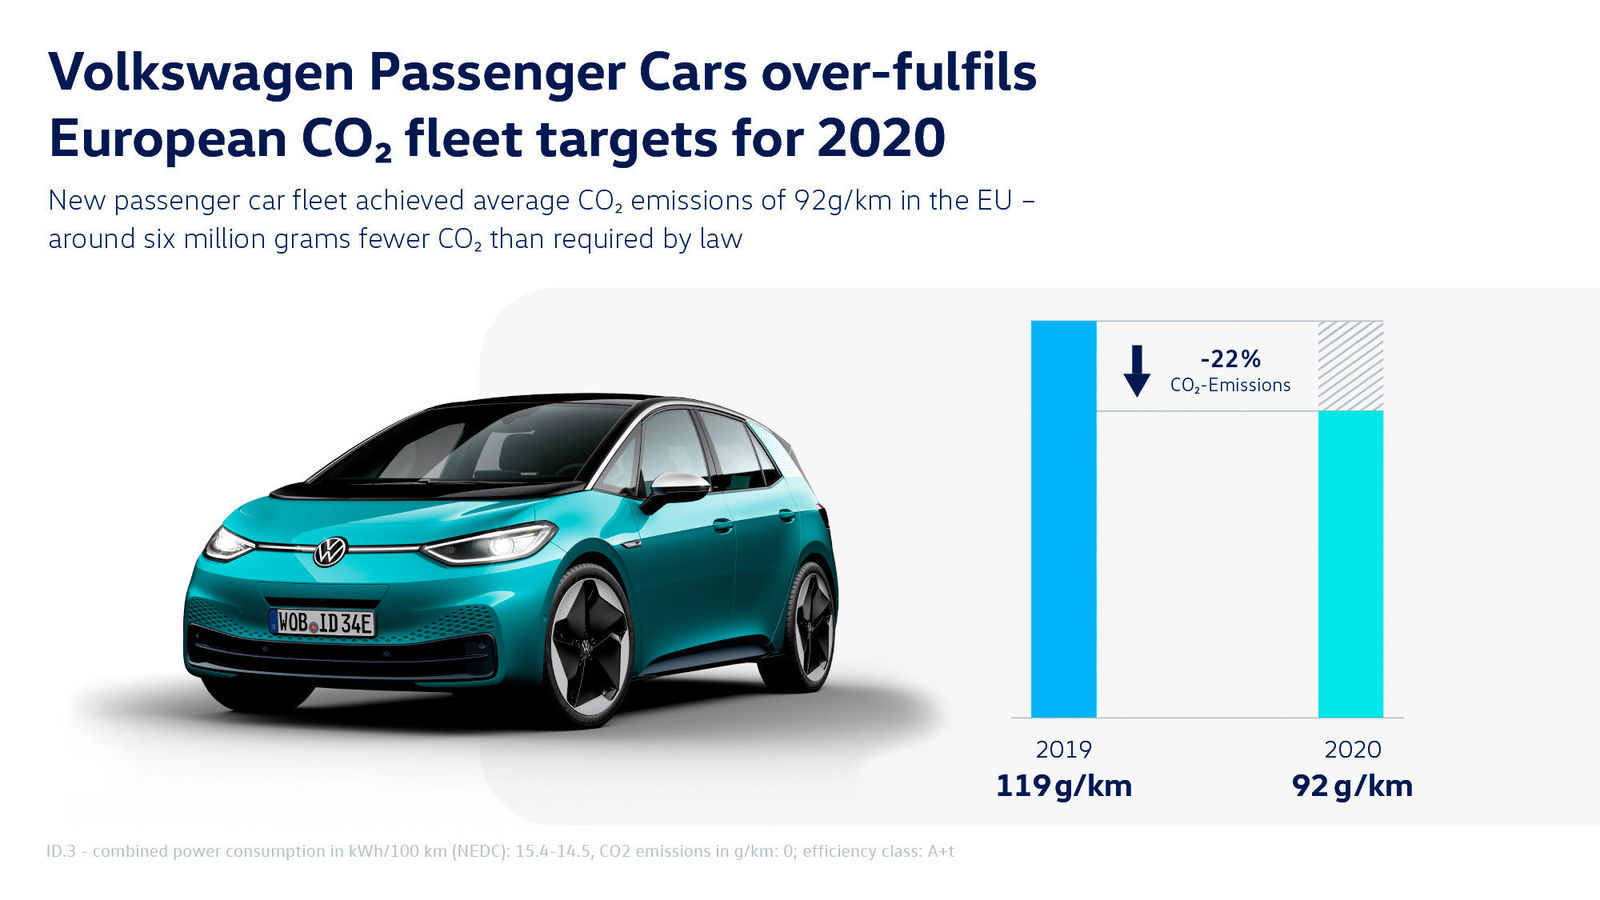 Volkswagen Passenger Cars over-fulfils European CO2 fleet targets for 2020